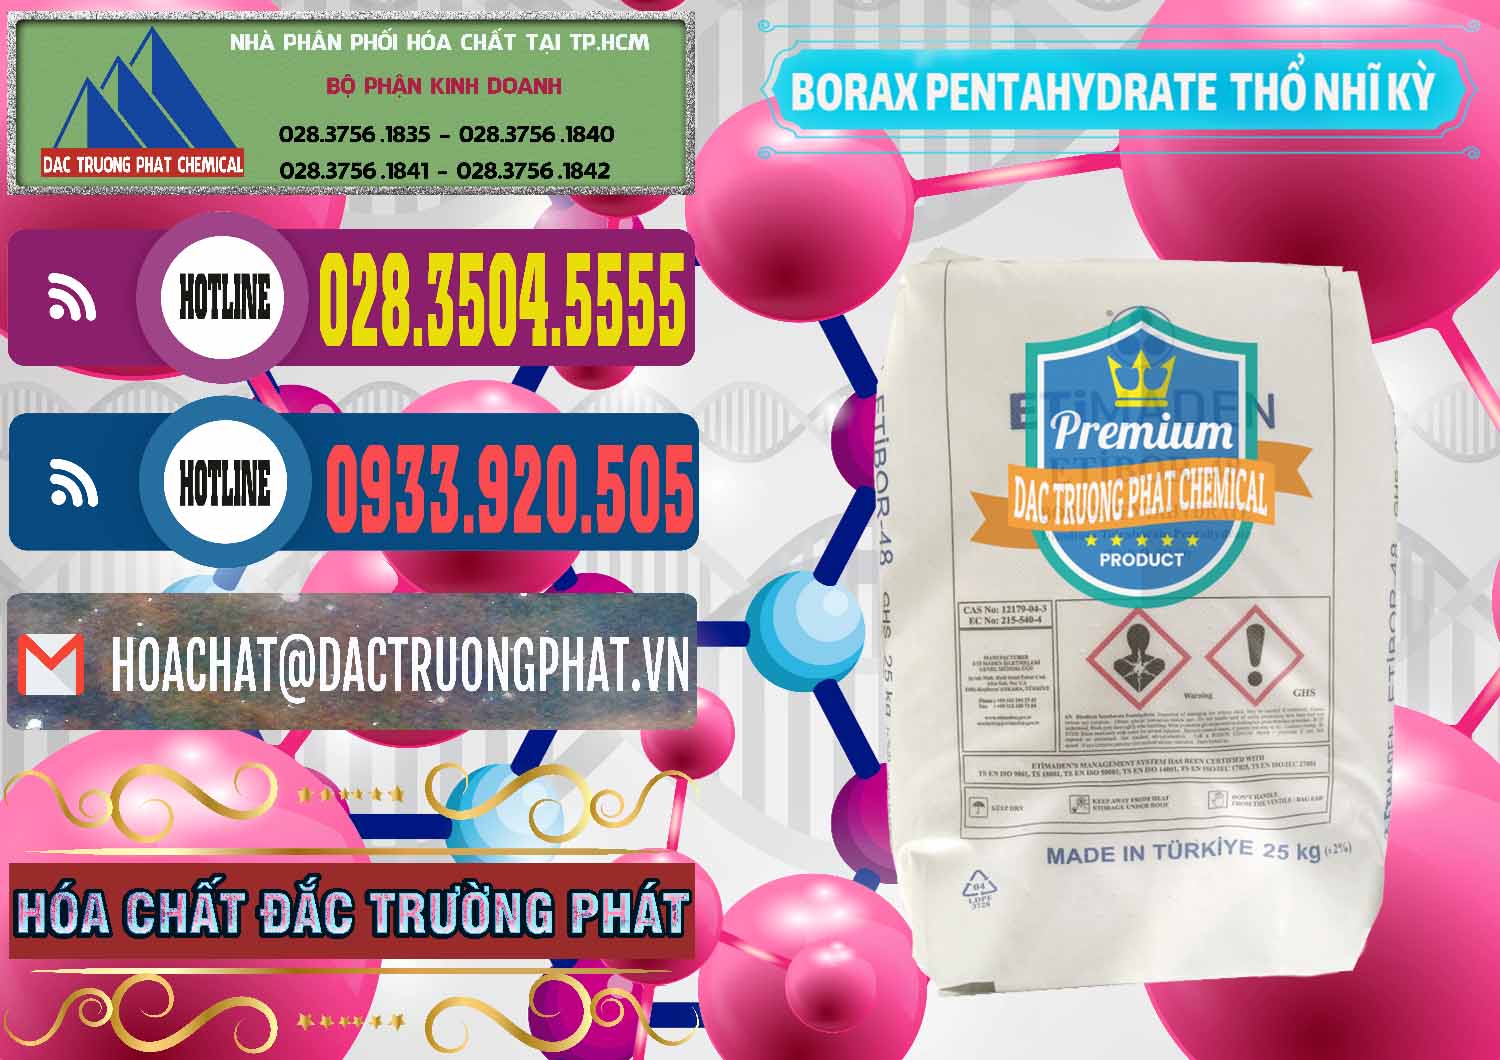 Cty kinh doanh & bán Borax Pentahydrate Thổ Nhĩ Kỳ Turkey - 0431 - Đơn vị kinh doanh và phân phối hóa chất tại TP.HCM - muabanhoachat.com.vn